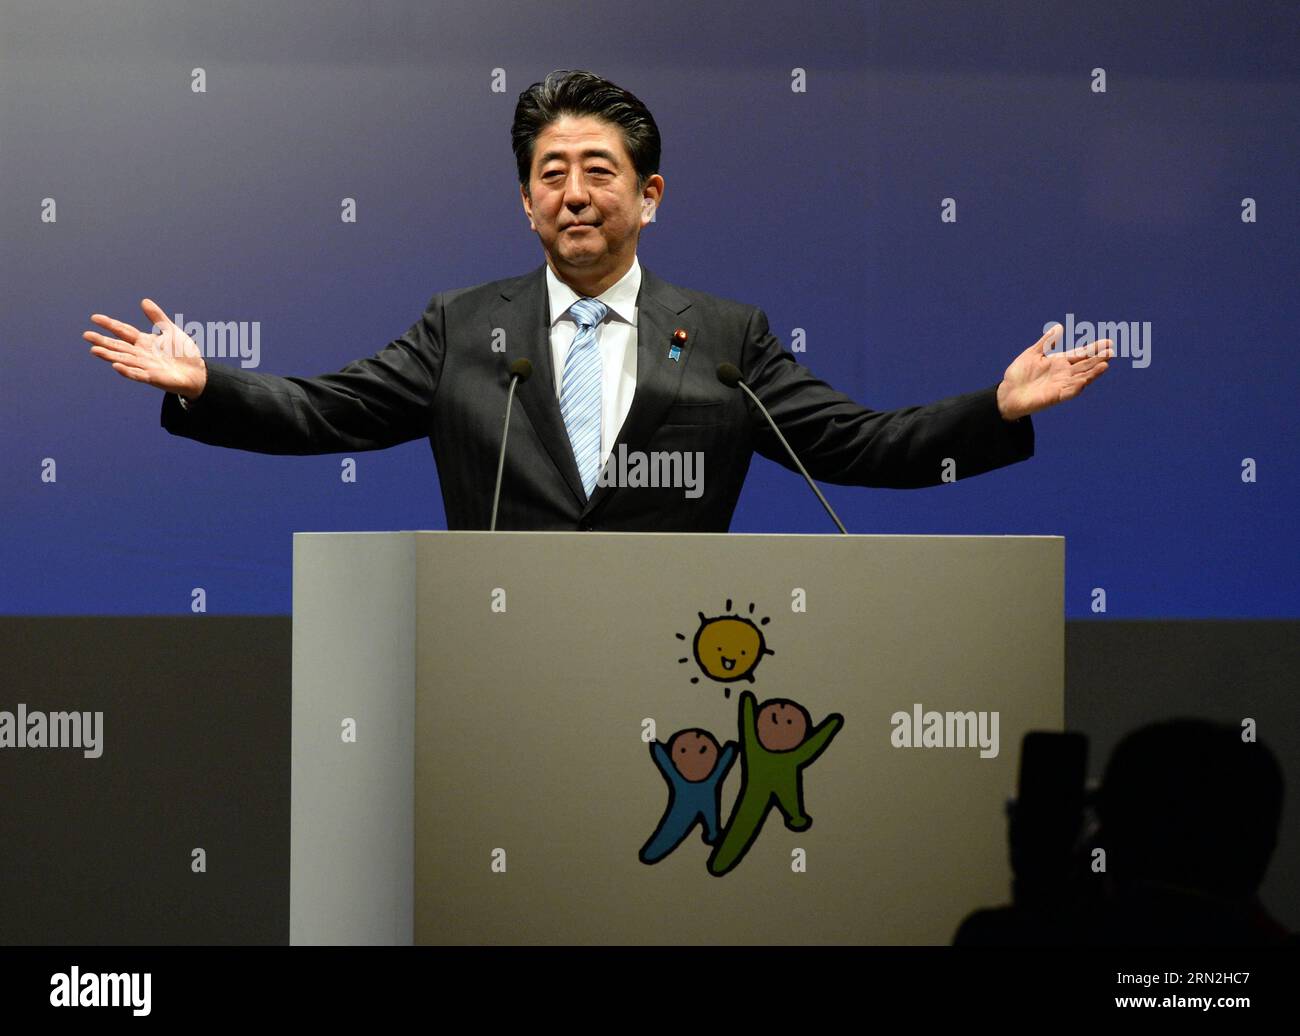 (150308) -- TOKYO, 8 marzo 2015 -- il primo ministro giapponese Shinzo Abe tiene un discorso durante la convenzione annuale del Partito Liberale Democratico (LDP), a Tokyo, in Giappone, 8 marzo 2015. Il primo ministro giapponese Shinzo Abe ha chiamato domenica per una discussione più approfondita sulla revisione della Costituzione pacifista del Giappone mentre il suo partito al governo Liberal Democratic Party (LDP) teneva la sua convenzione annuale. (Lyi) JAPAN-TOKYO-LDP-ABE MaxPing PUBLICATIONxNOTxINxCHN Tokyo 8 marzo 2015 i primi ministri giapponesi Shinzo ABE tengono un discorso durante la Convenzione annuale del Partito Liberale Democratico LDP a Tokyo in Giappone l'8 marzo 201 Foto Stock